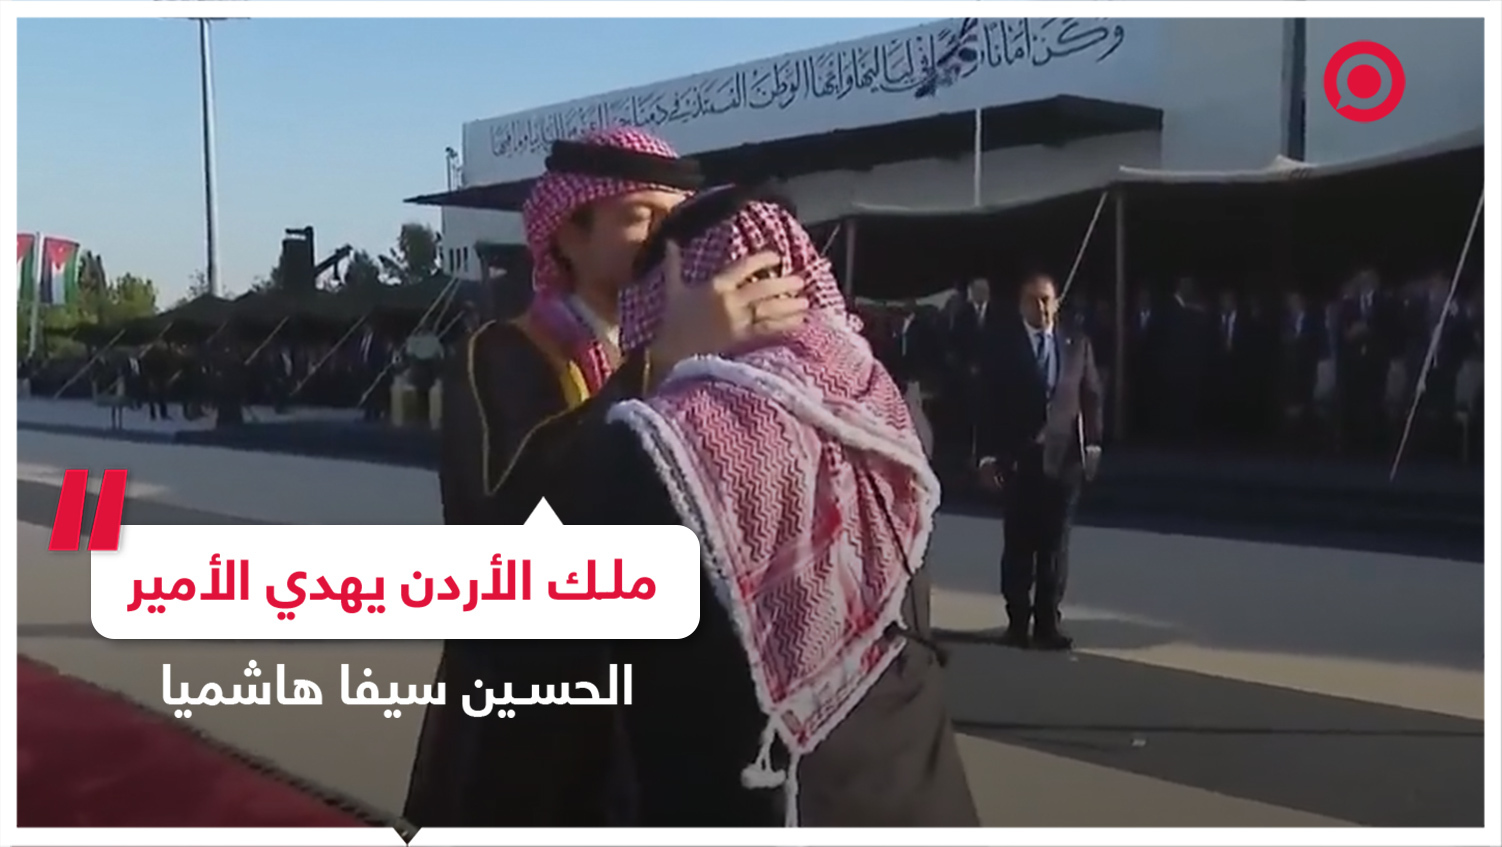 الملك الأردني عبدالله الثاني يهدي ولي العهد سيفا هاشميا